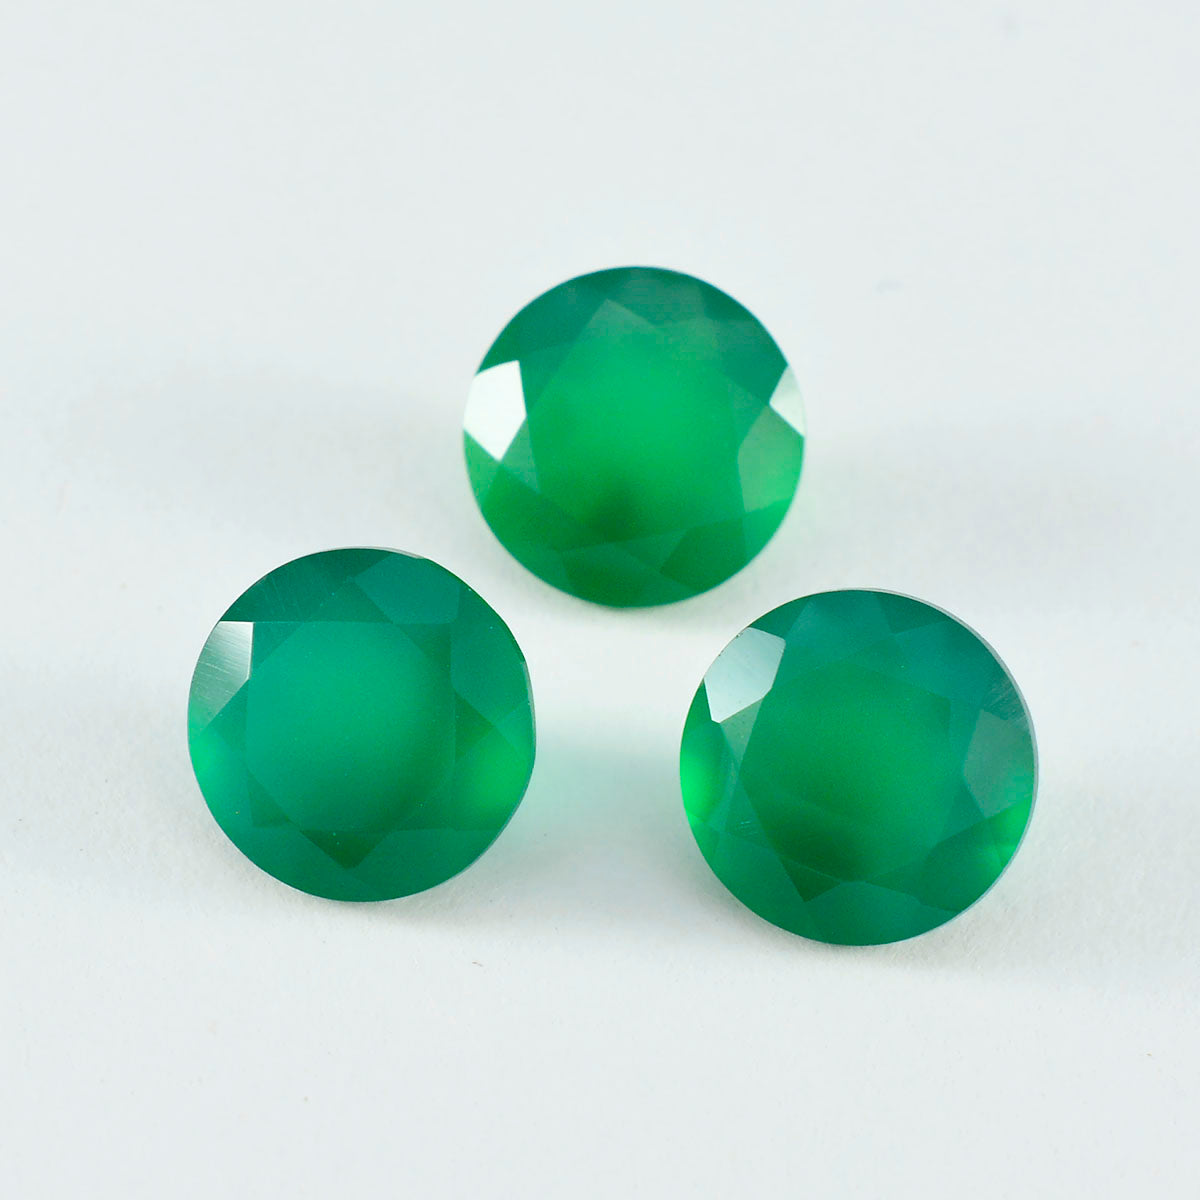 riyogems 1 шт. натуральный зеленый оникс ограненный 8x8 мм круглая форма красивый качественный драгоценный камень